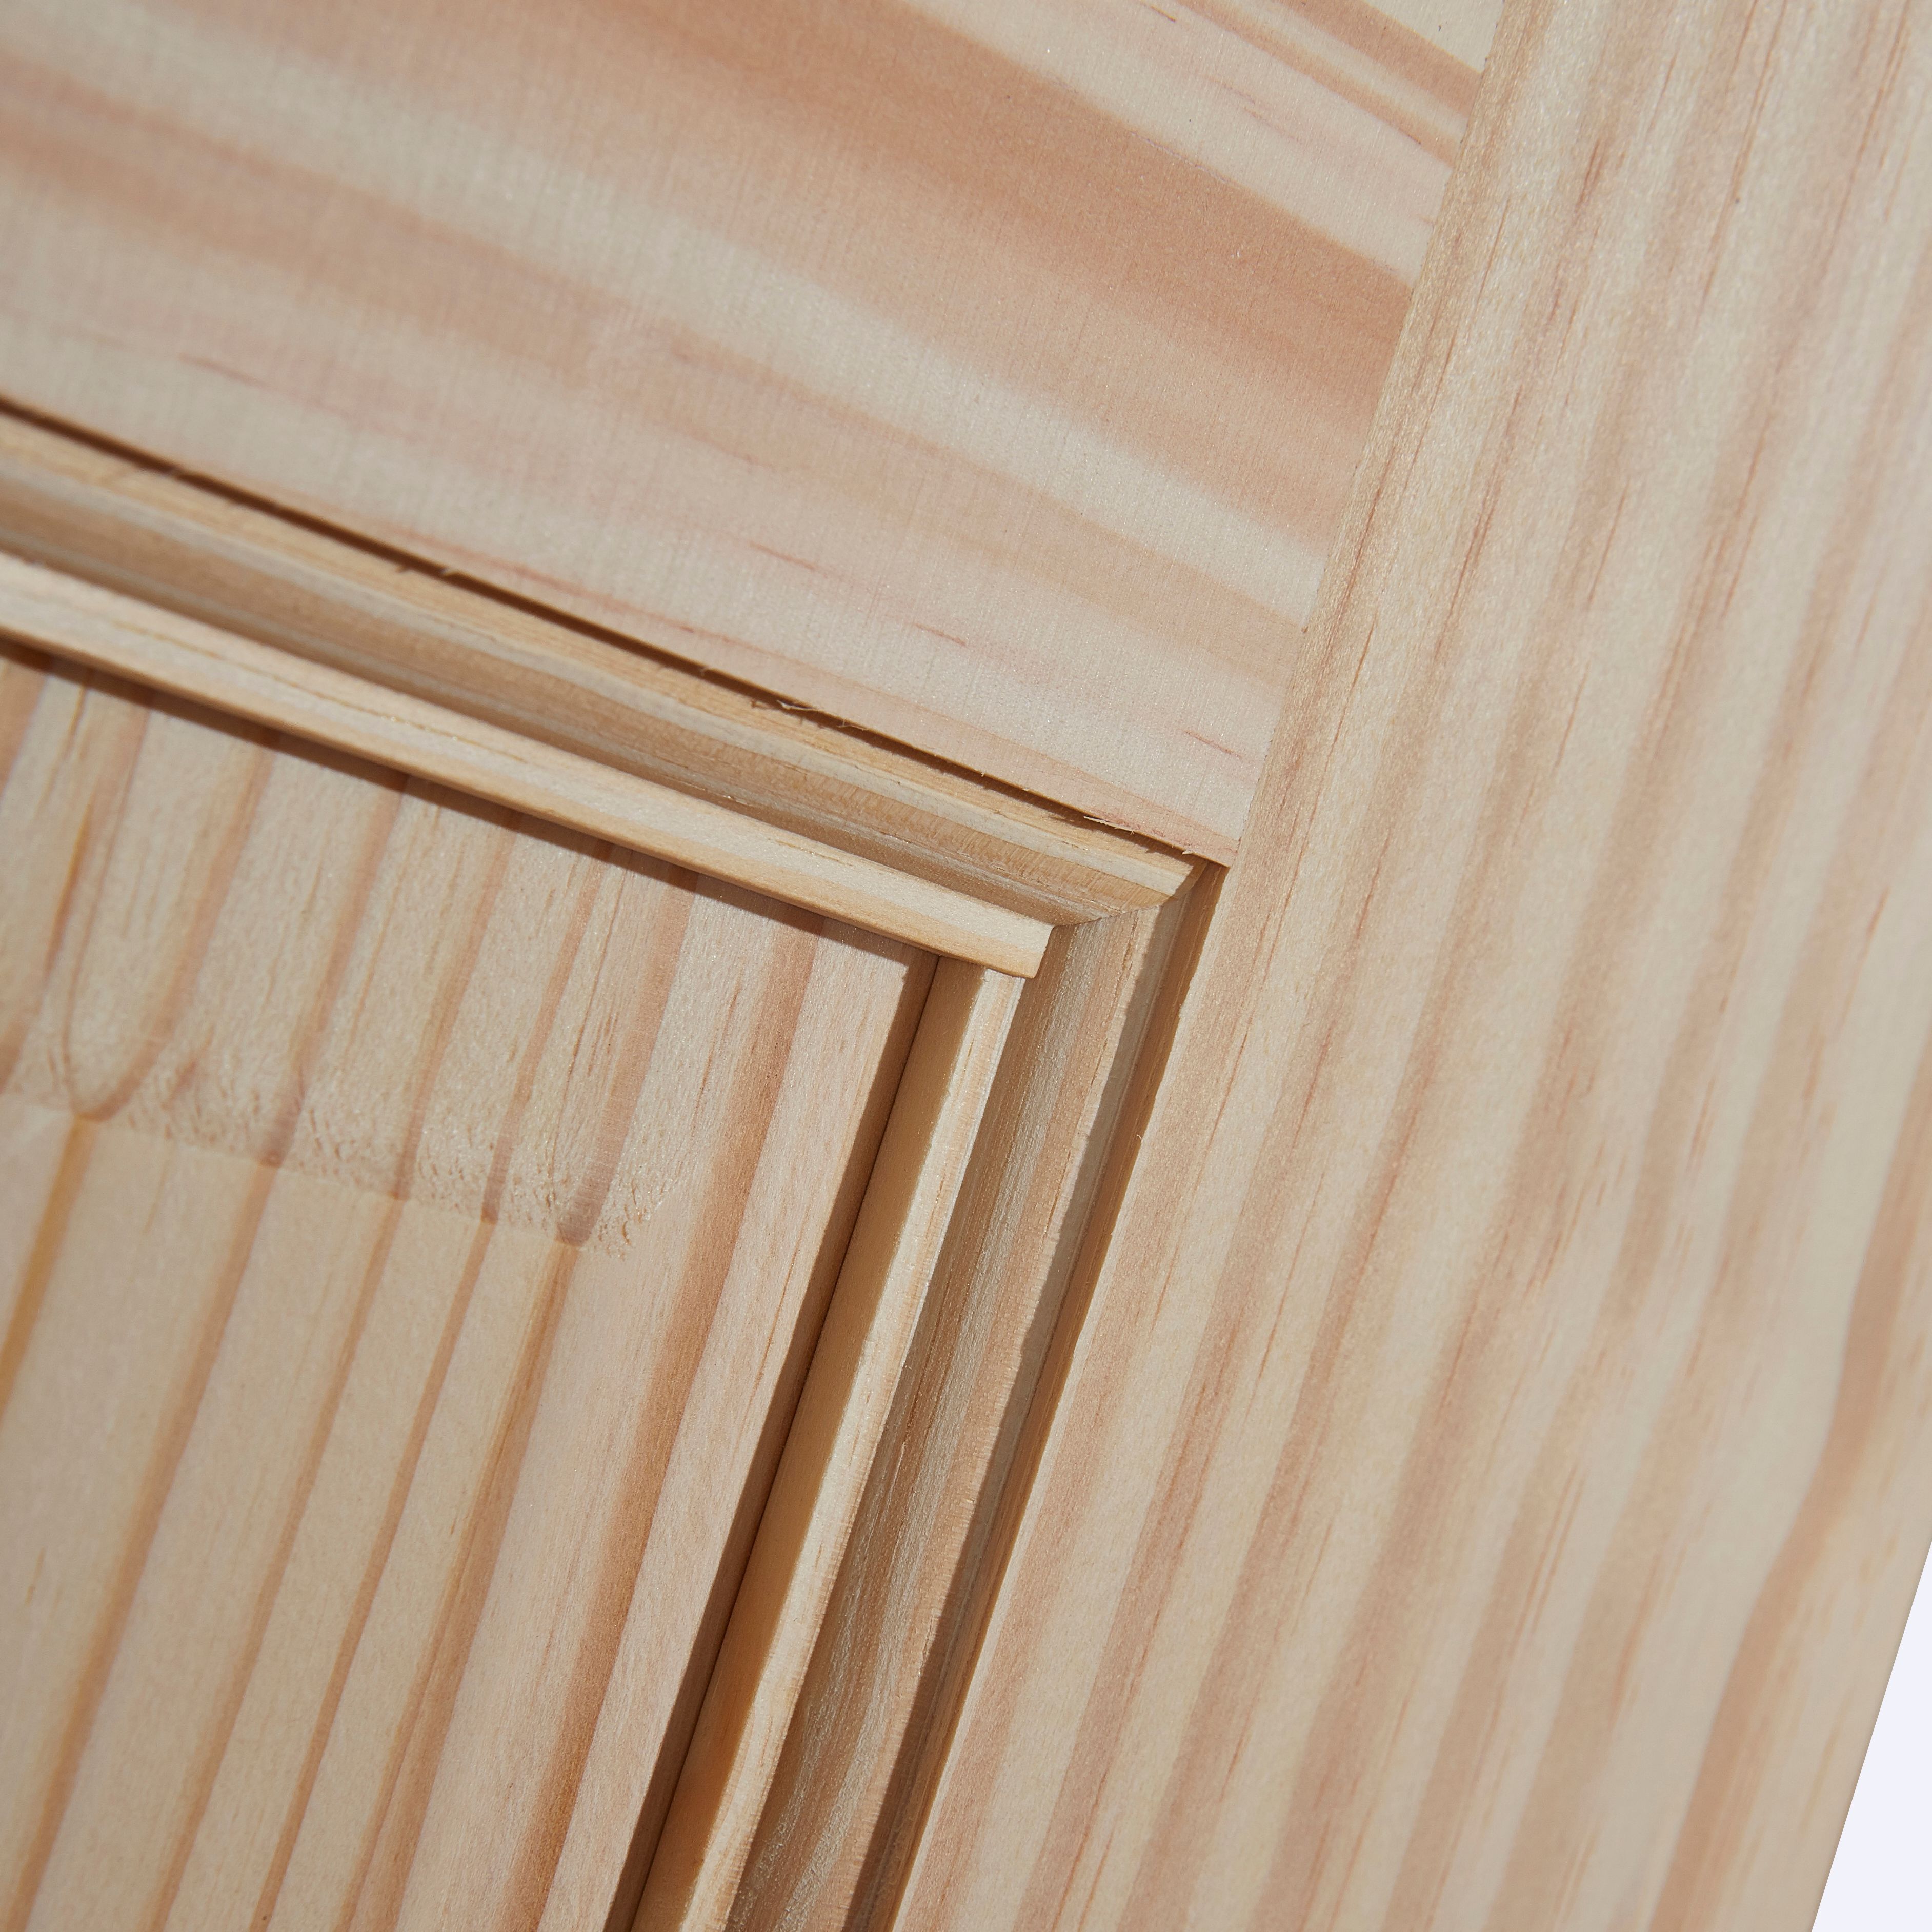 6 panel Unglazed Victorian Pine veneer Internal Clear pine Door, (H)1981mm (W)838mm (T)35mm